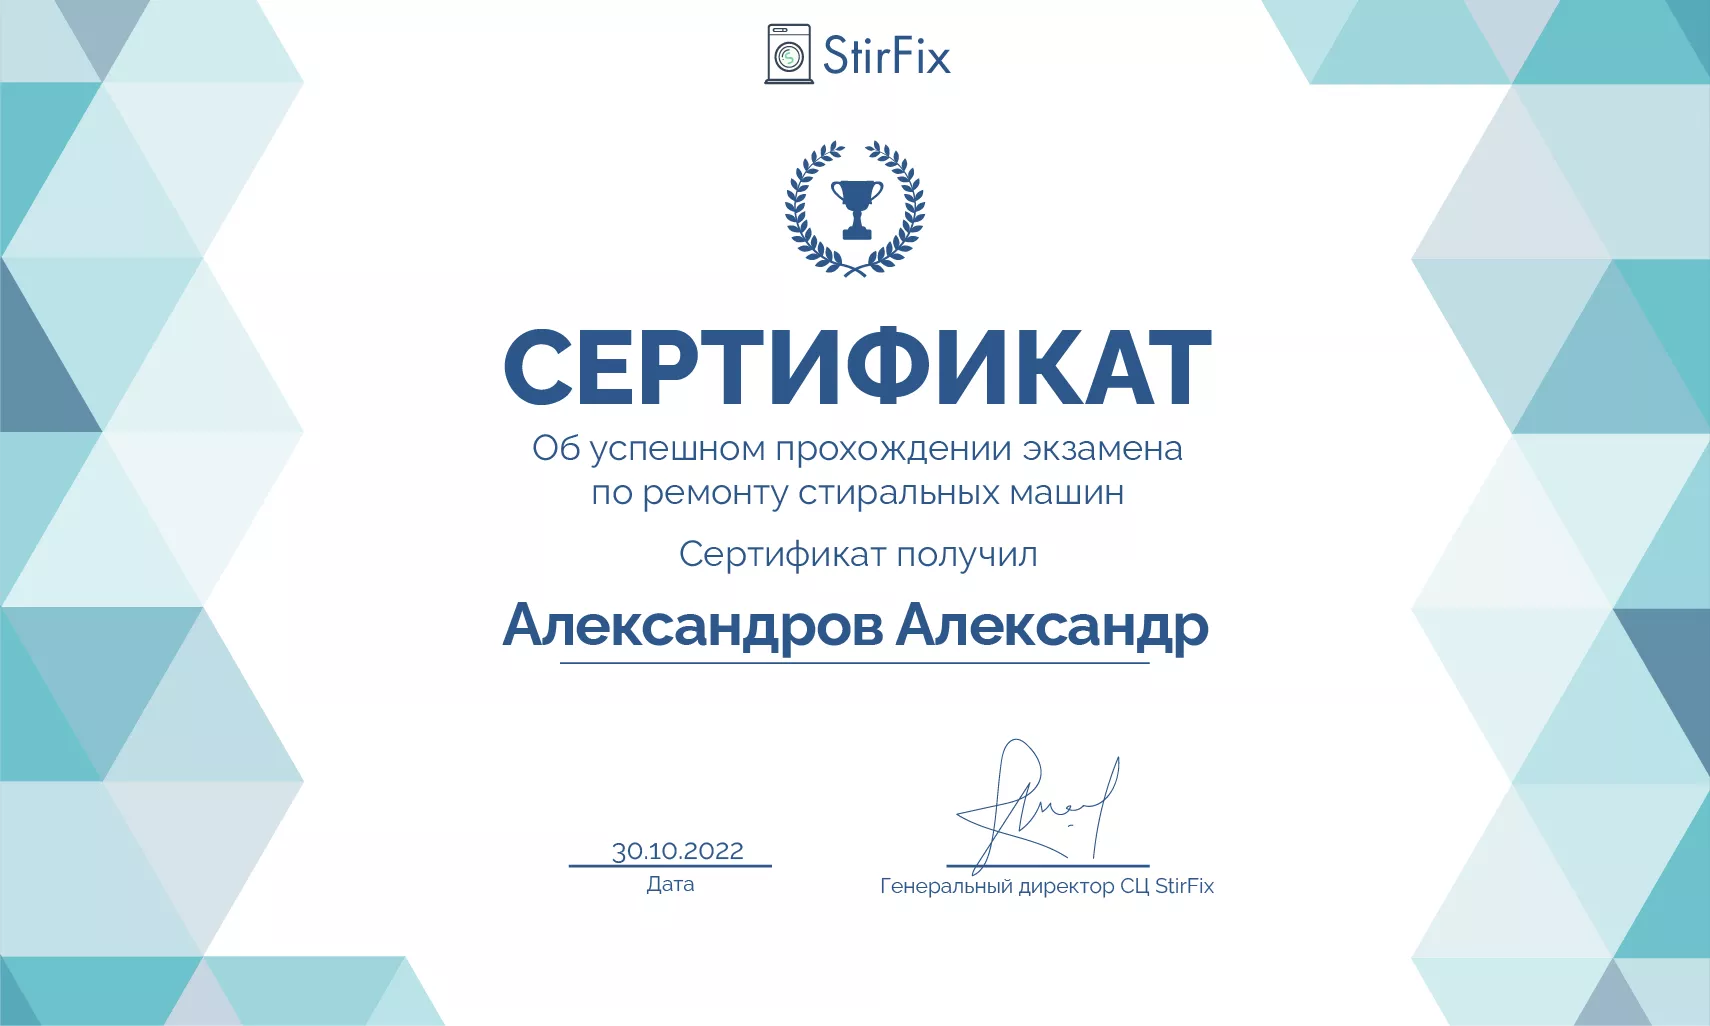 Александров Александр сертификат мастера по ремонту стиральных машин